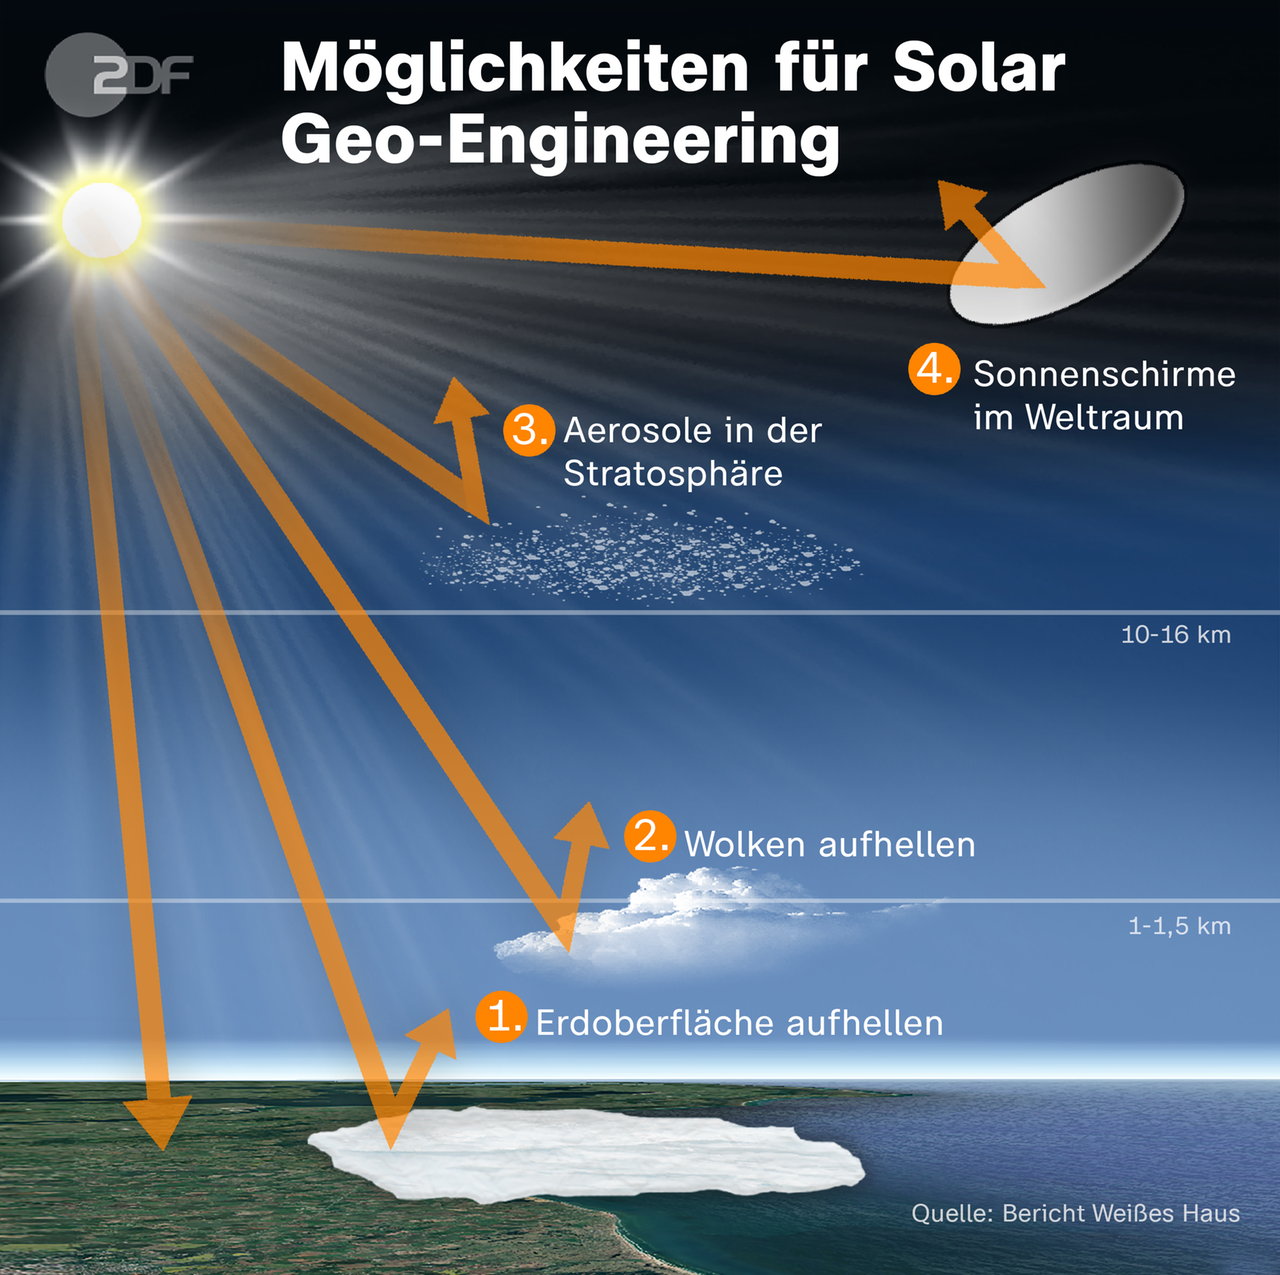 Die Infografik zeigt Möglichkeiten für Solar Geo-Engineering. Insgesamt vier Möglichkeite: Erdoberfläche aufhellen, Wolken aufhellen, Aerosole in der Stratosphäre und Sonnenschirme im Weltraum.